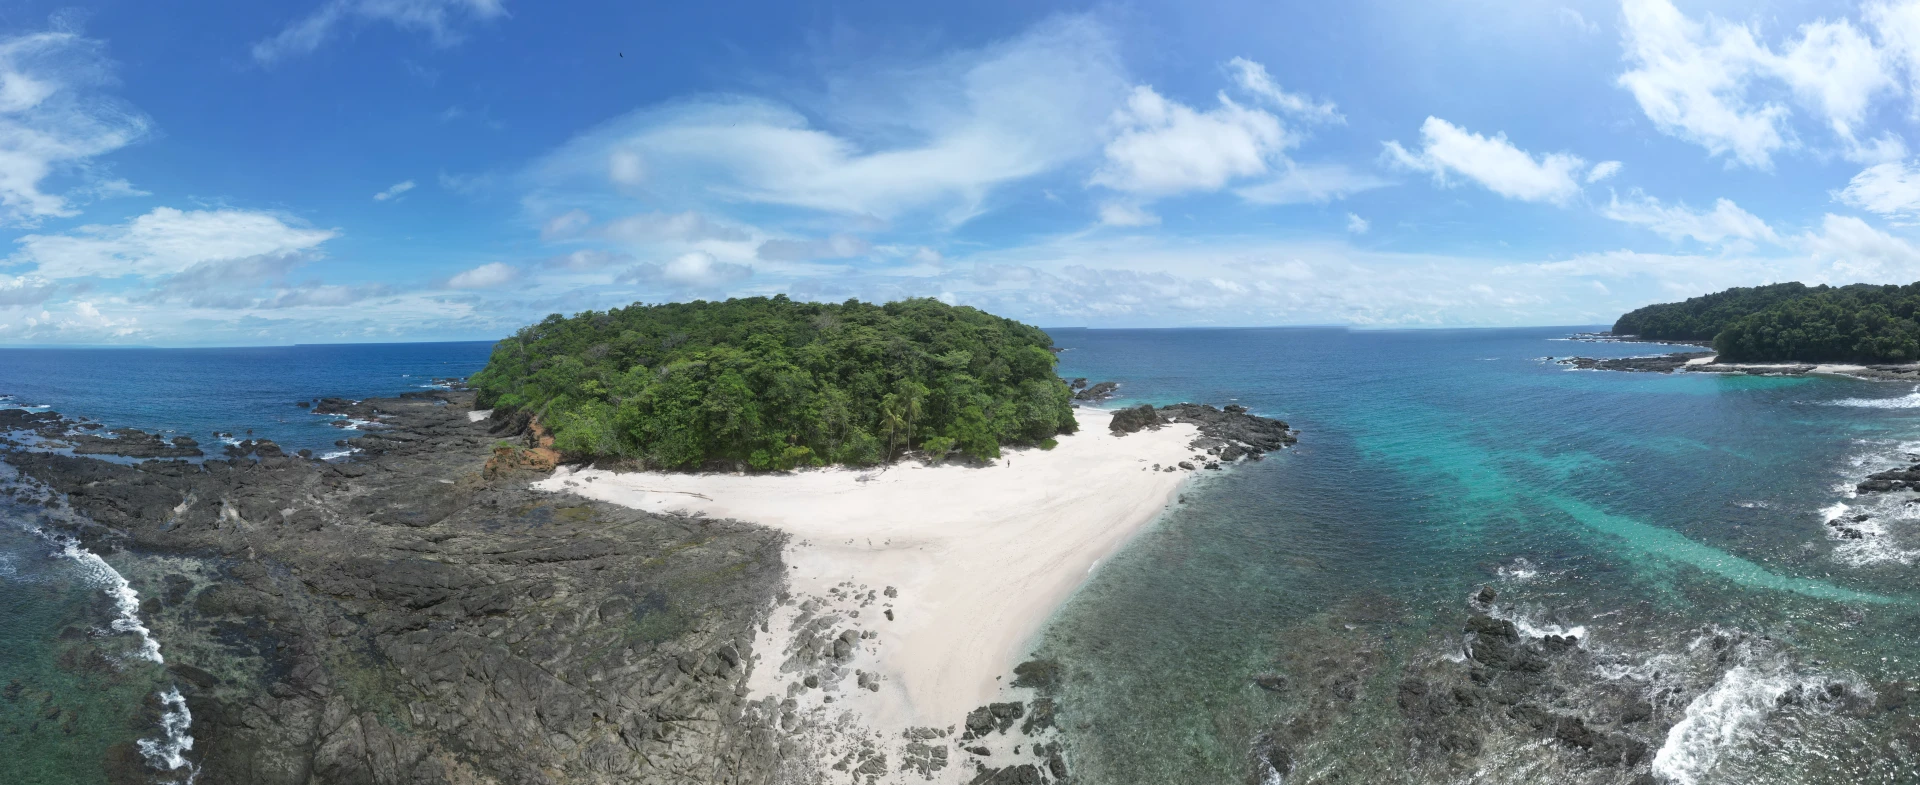 Un impresionante vistazo a la majestuosidad de Isla Caleta, capturado a pleno medio día, destacando sus extensas playas de arena blanca y las aguas cristalinas que rodean este paraíso de la pesca deportiva en Panamá.